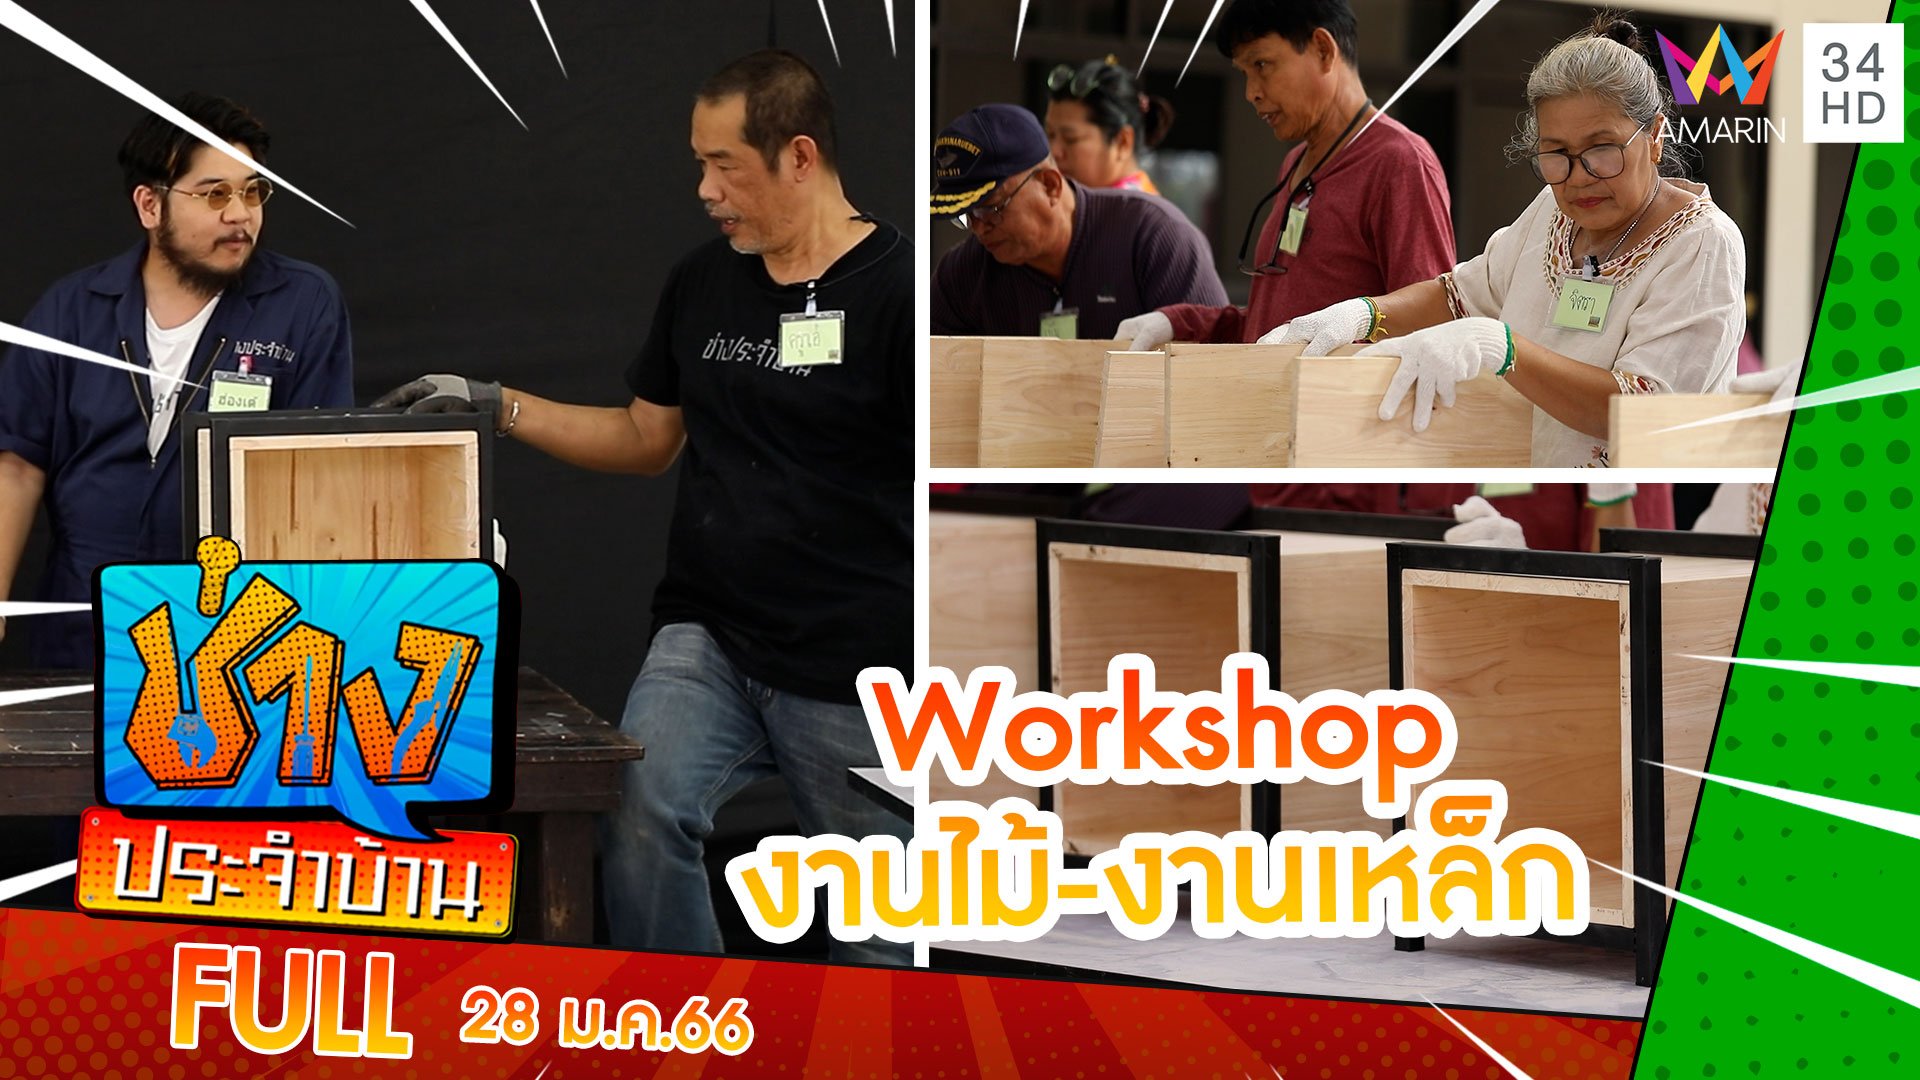 Workshop งานไม้-งานเหล็ก | ช่างประจำบ้าน | 28 ม.ค. 66 | AMARIN TVHD34